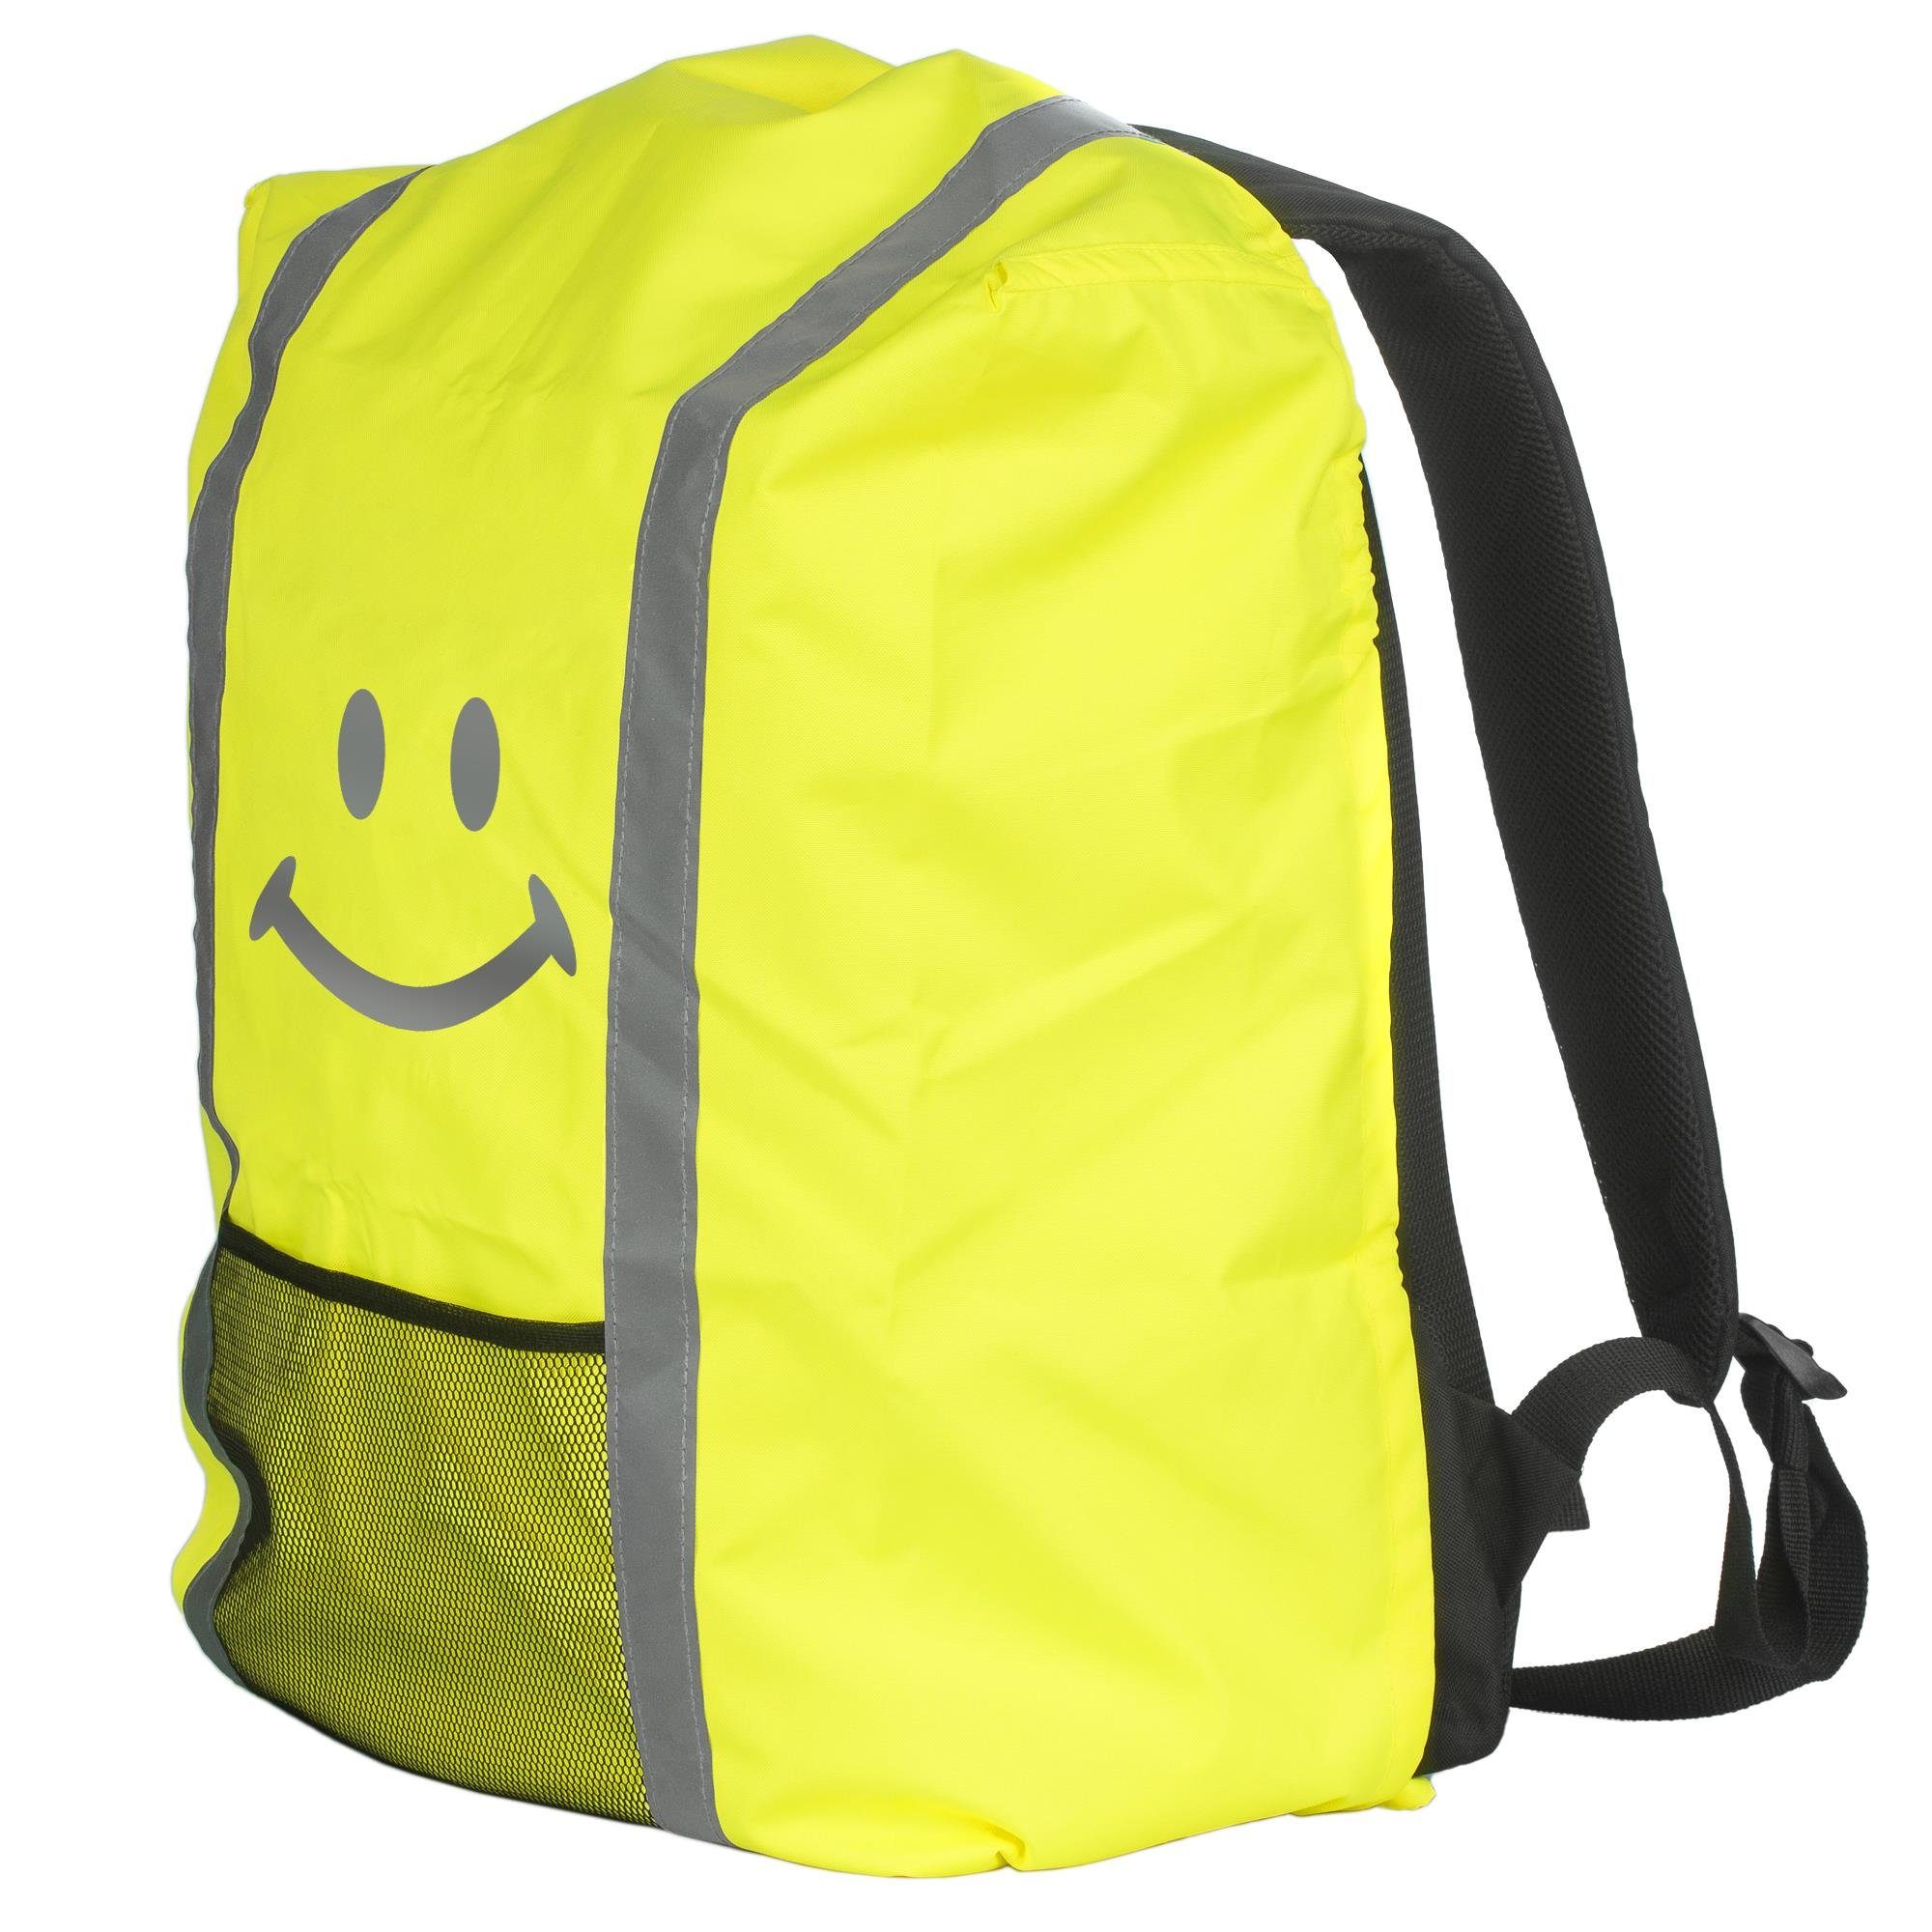 EAZY CASE Rucksack-Regenschutz Reflektor-Überzug Schutzhülle Smiley, Kinder Sicherheit Regenschutzhülle Reflektorstreifen Regenhülle Gelb